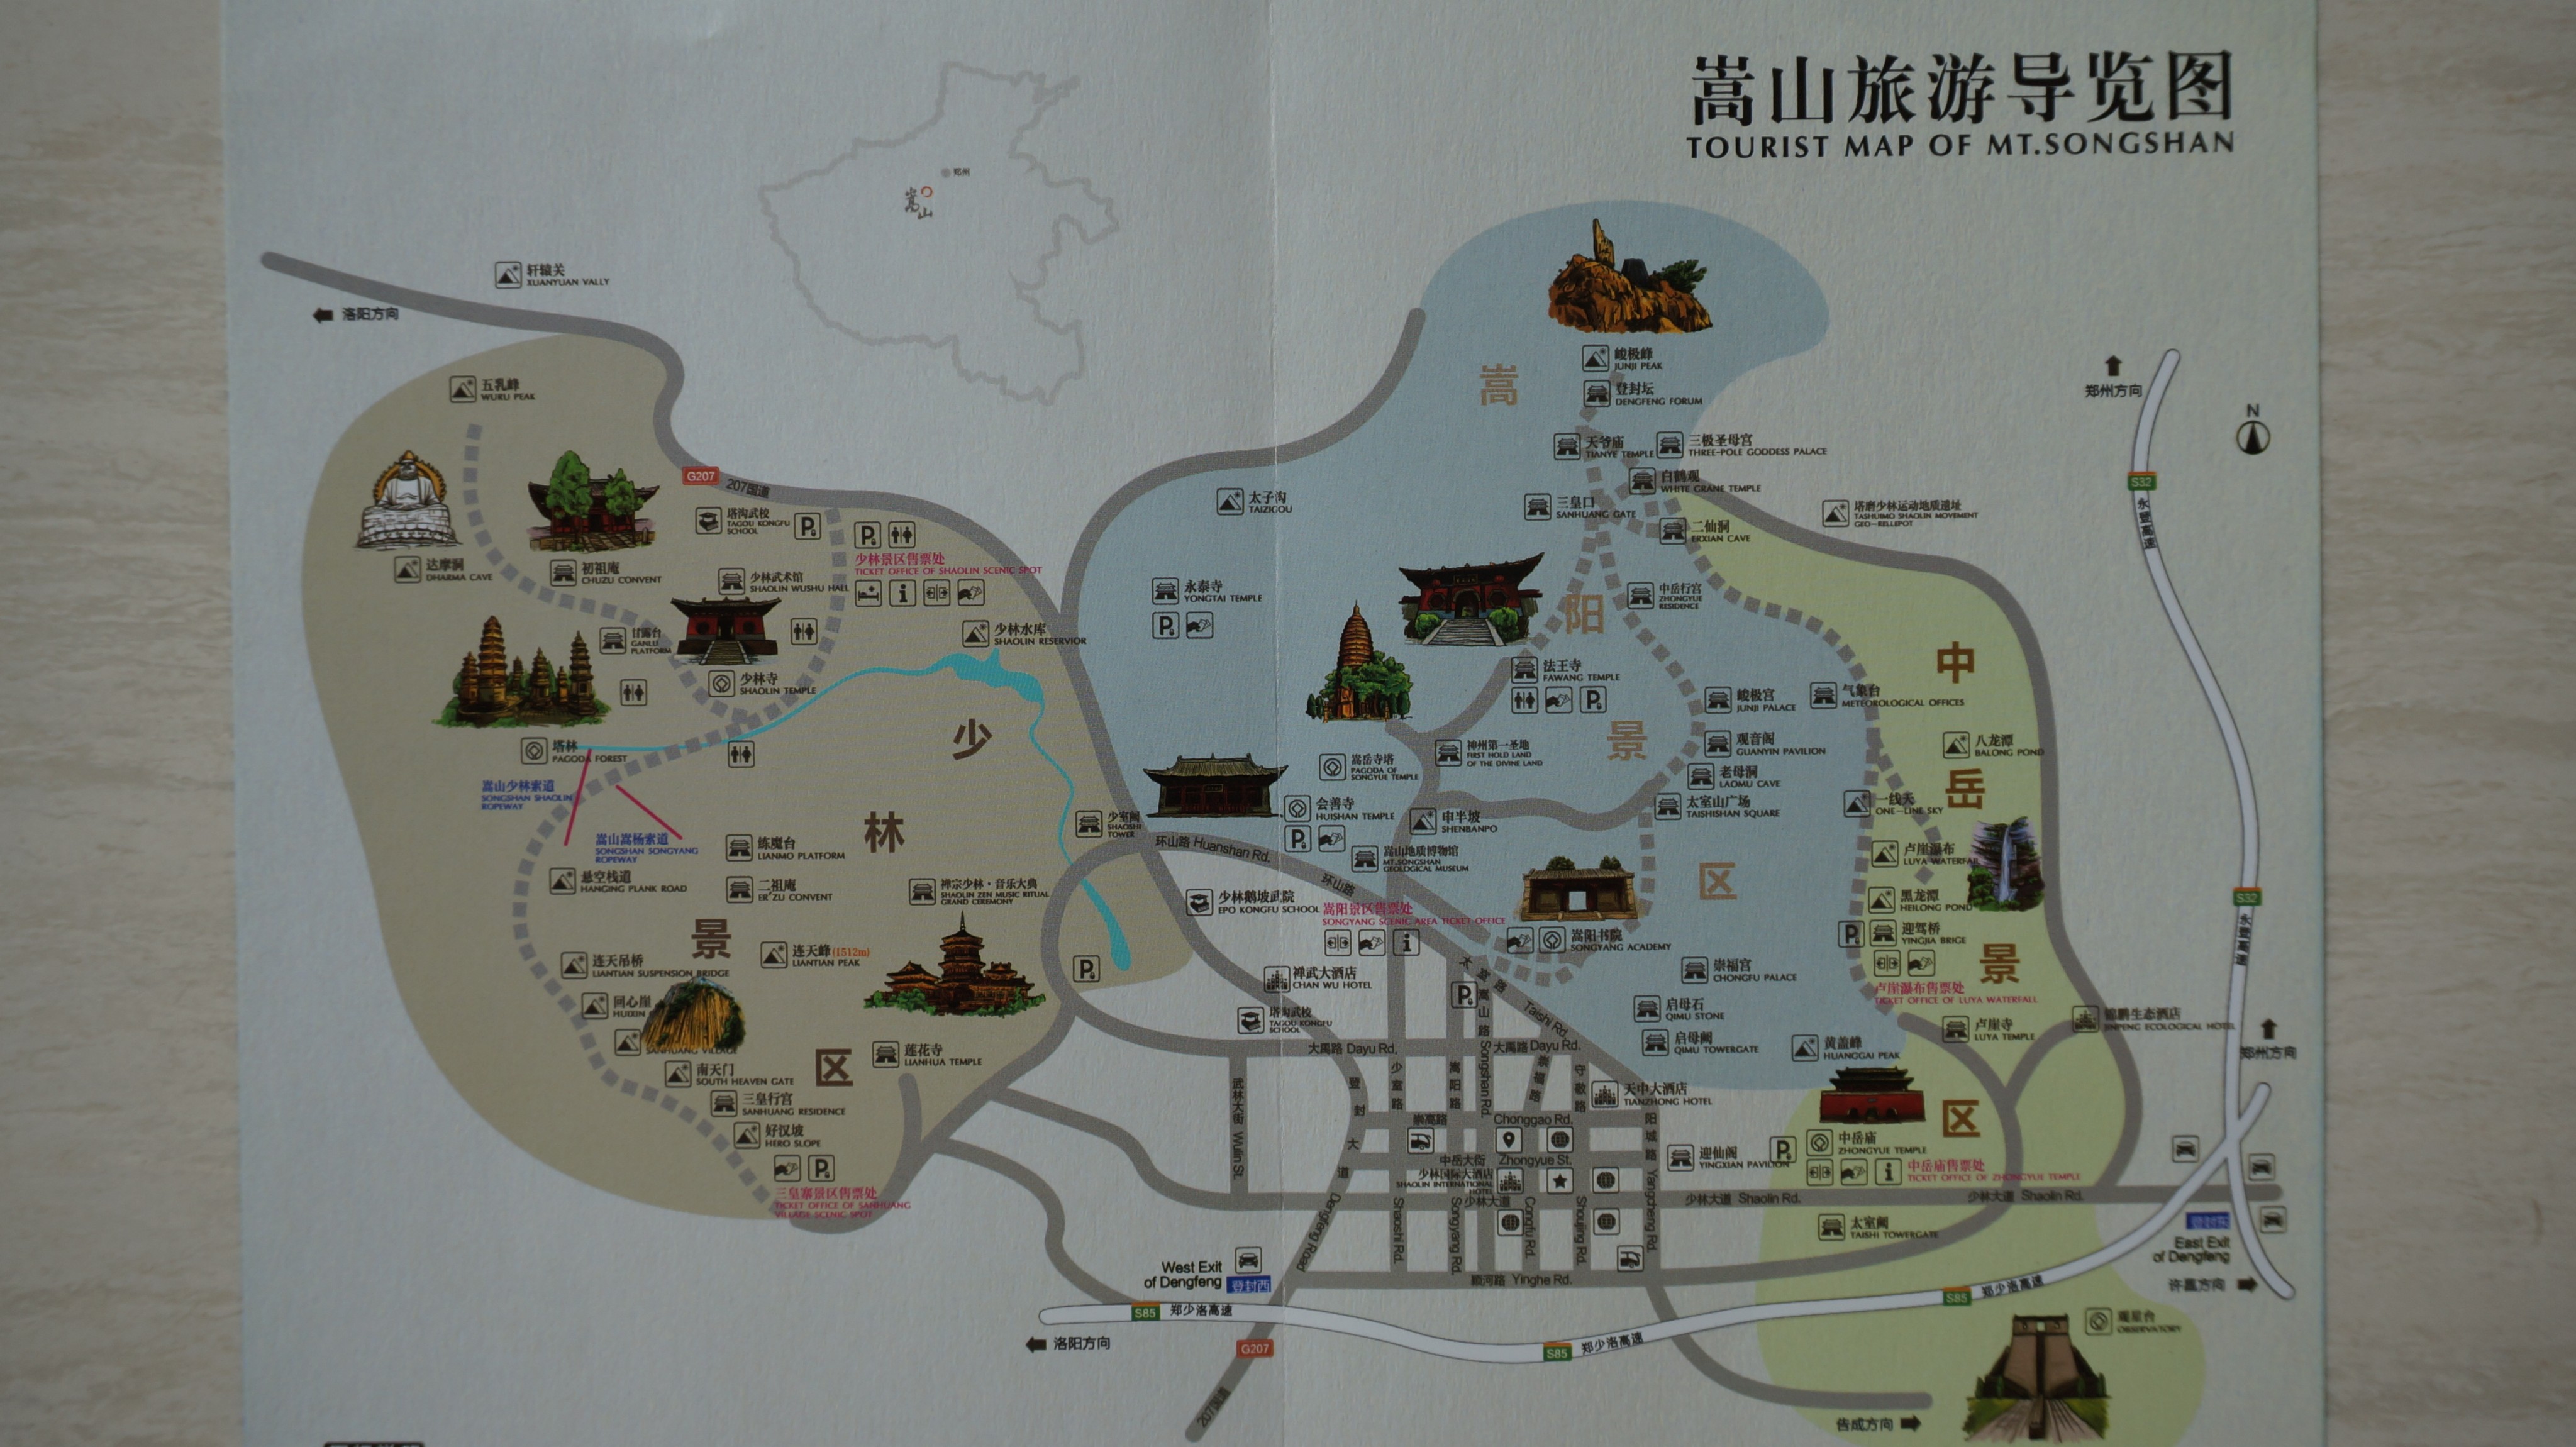 从郑州火车站出发去嵩山二日游有什么好的路线推荐嘛